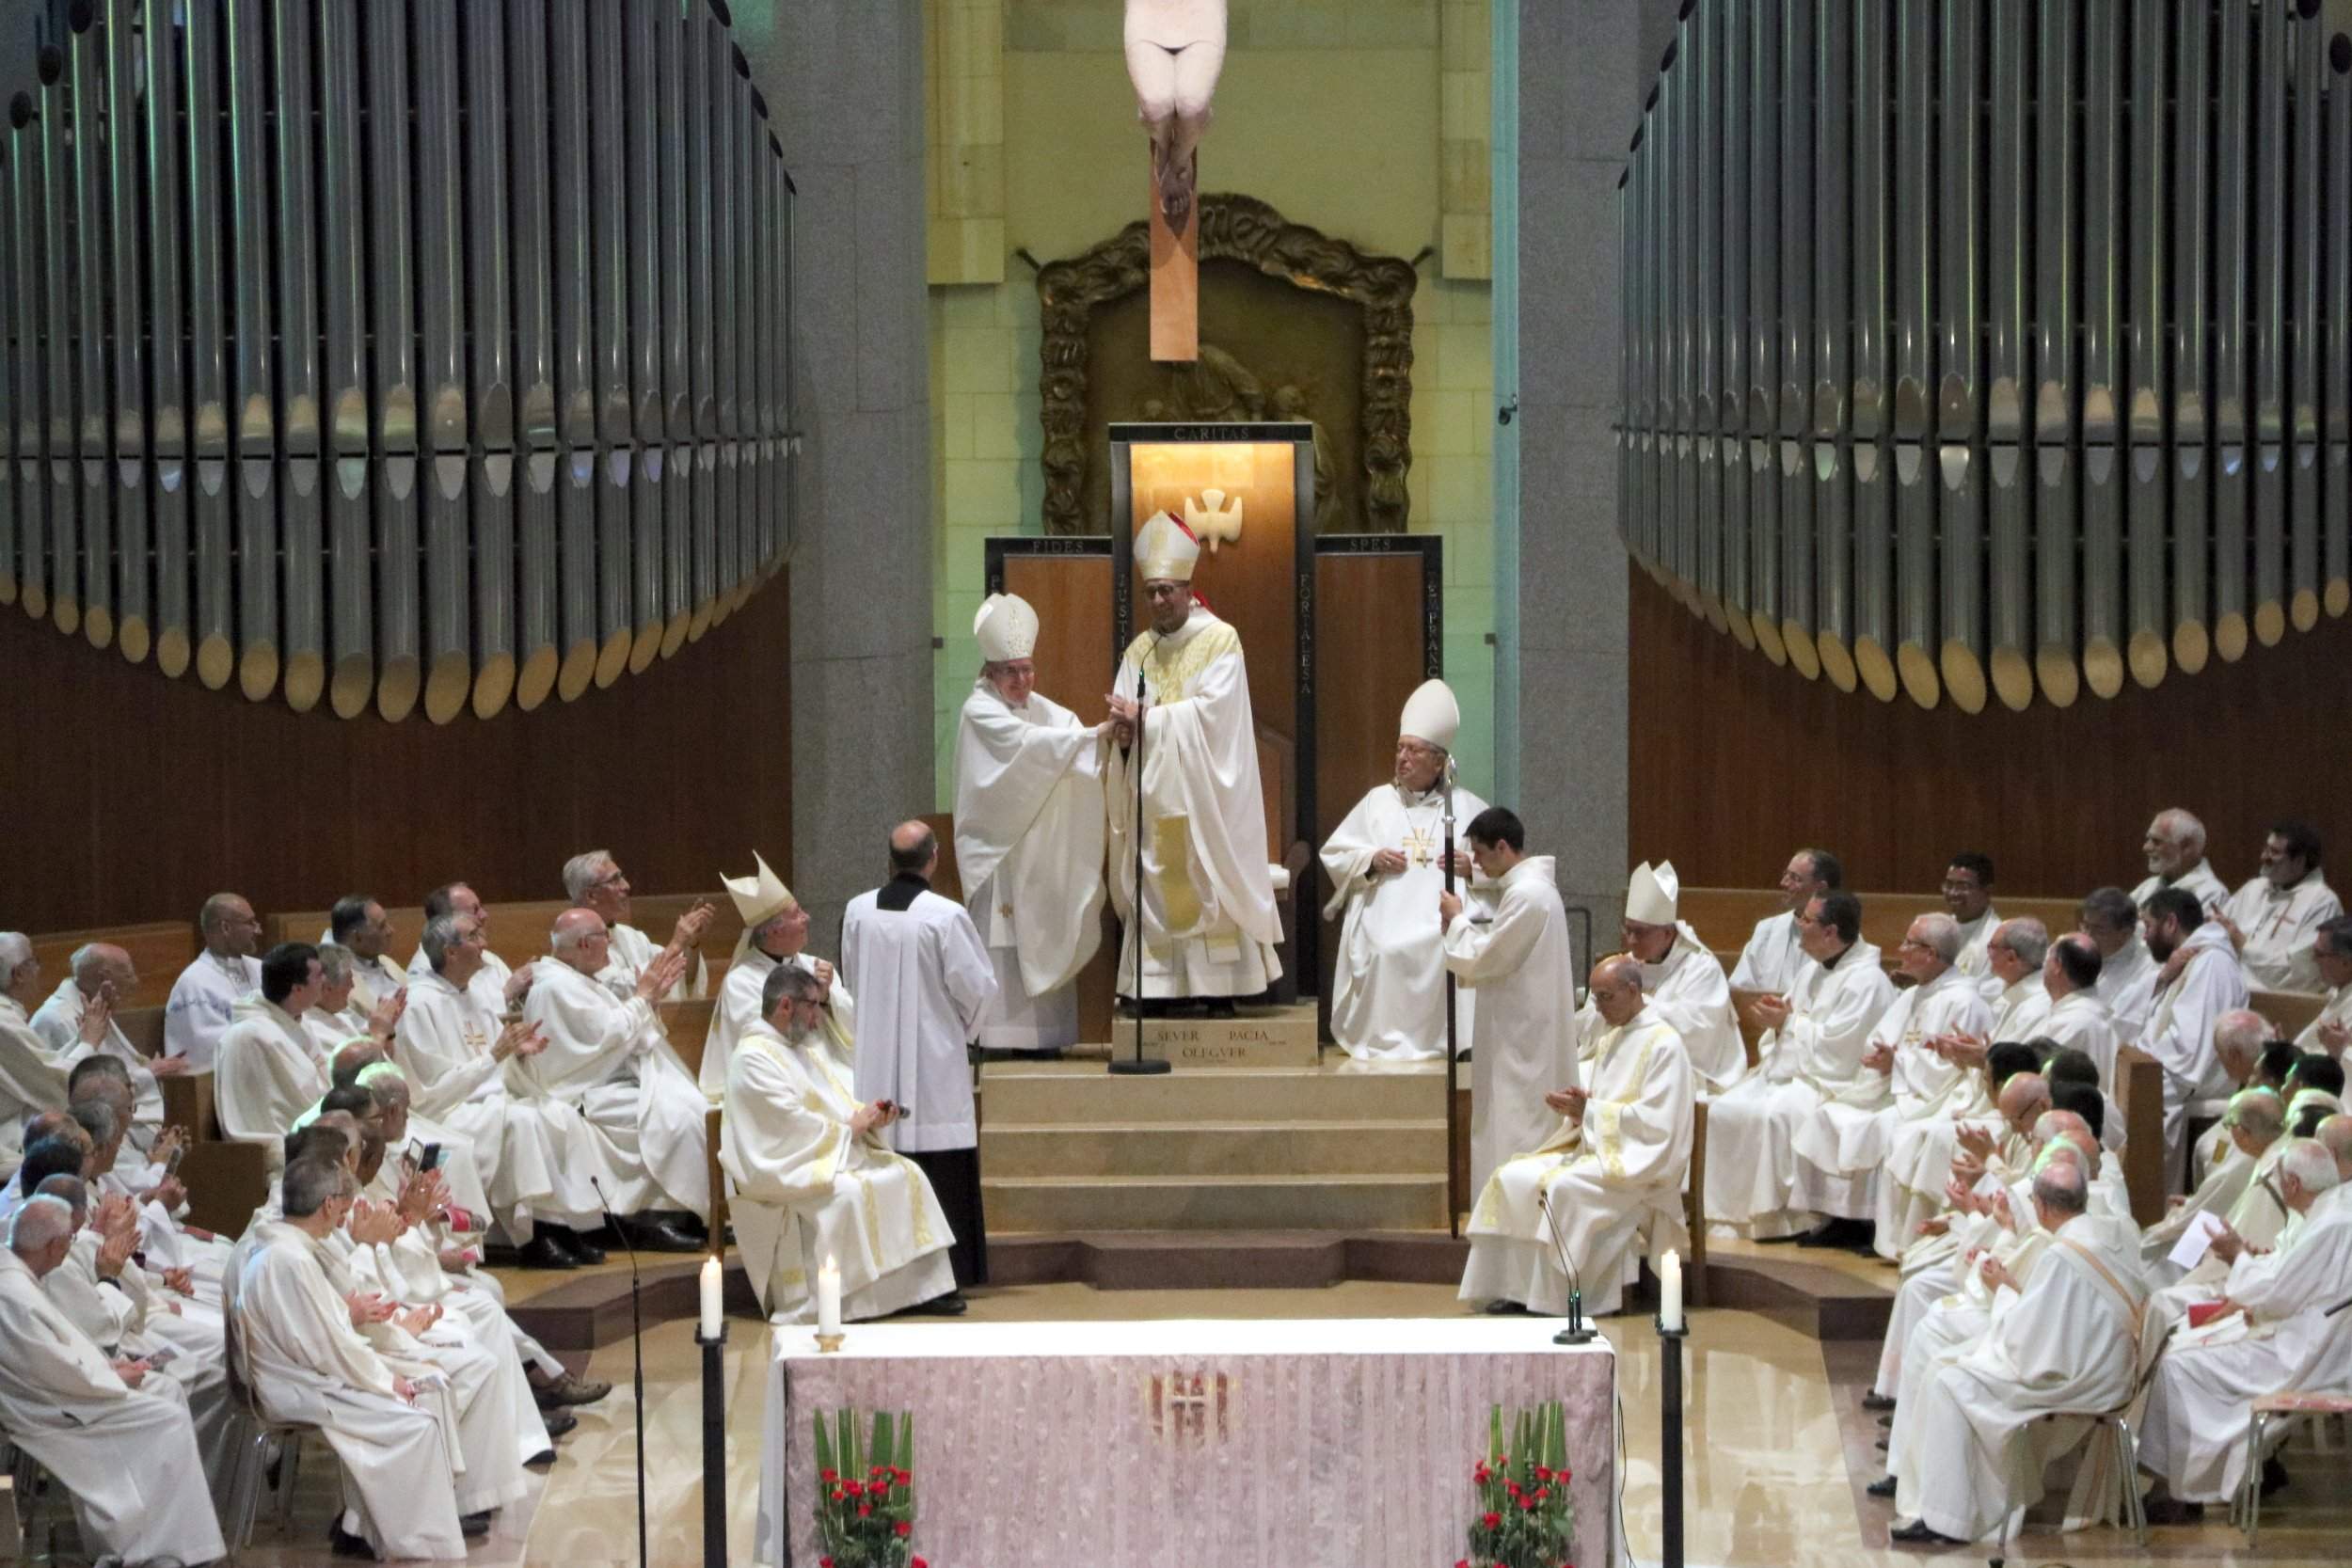 Omella destaca la misión de "dignidad" y "servicio" que asume como cardenal